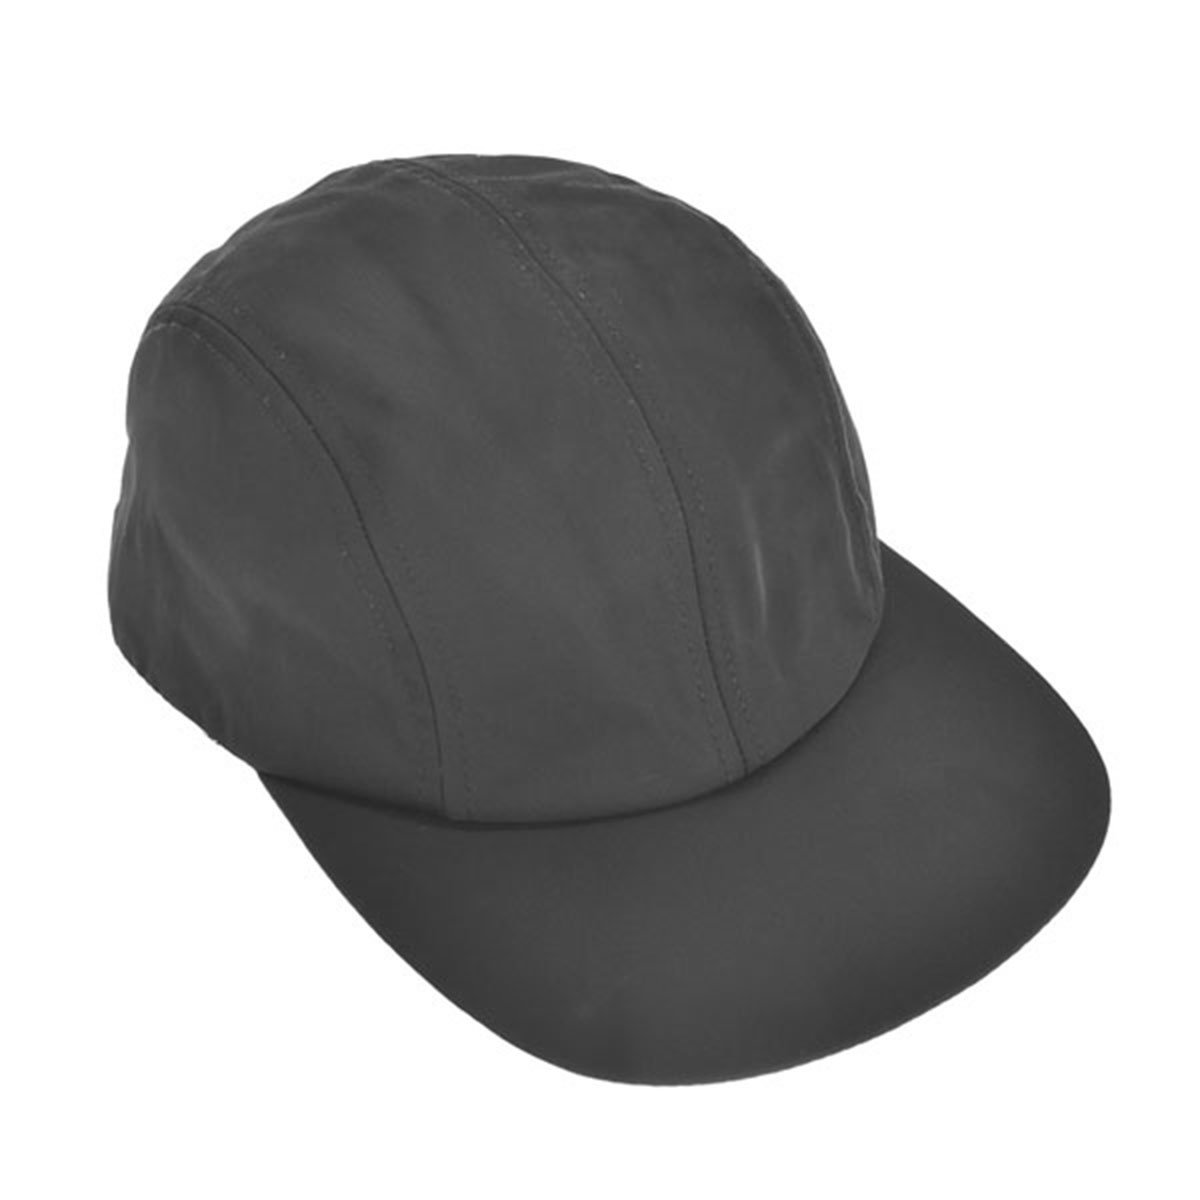 ケンゾー KENZO キャップ 帽子 PFC65AC201F30 99 BLACK ブラック ブランド キャップ 人気 おしゃれ クリスマスプレゼント 新品 キャップ